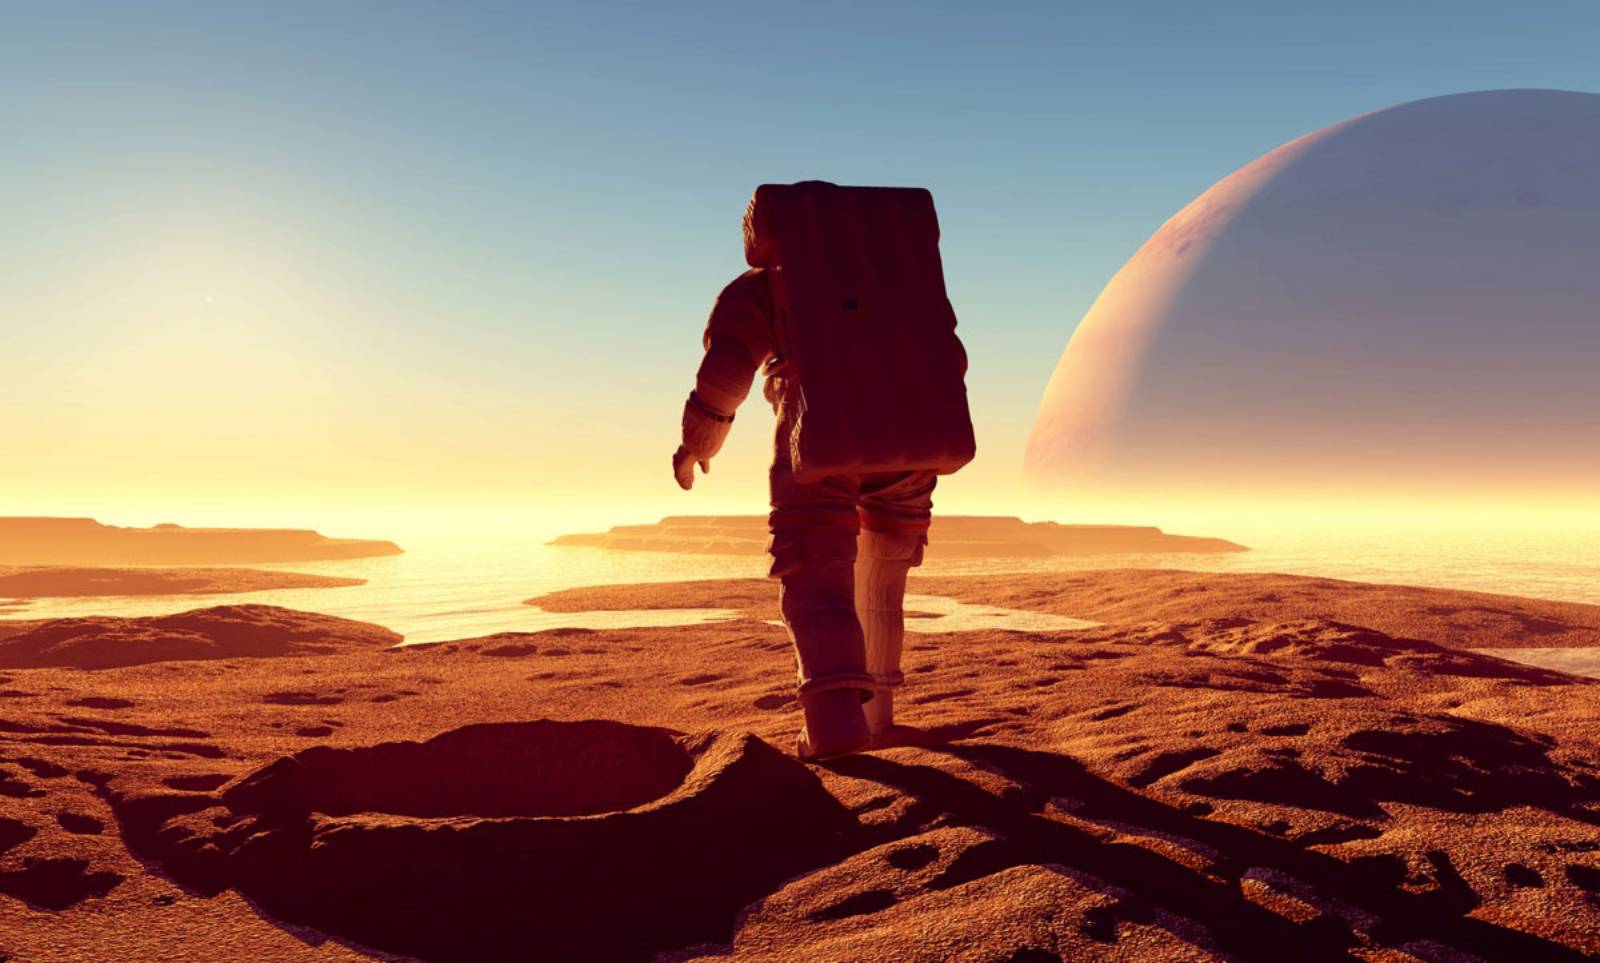 Pianeta Marte. Gli astronauti della NASA ci dicono come sarà la vita lì